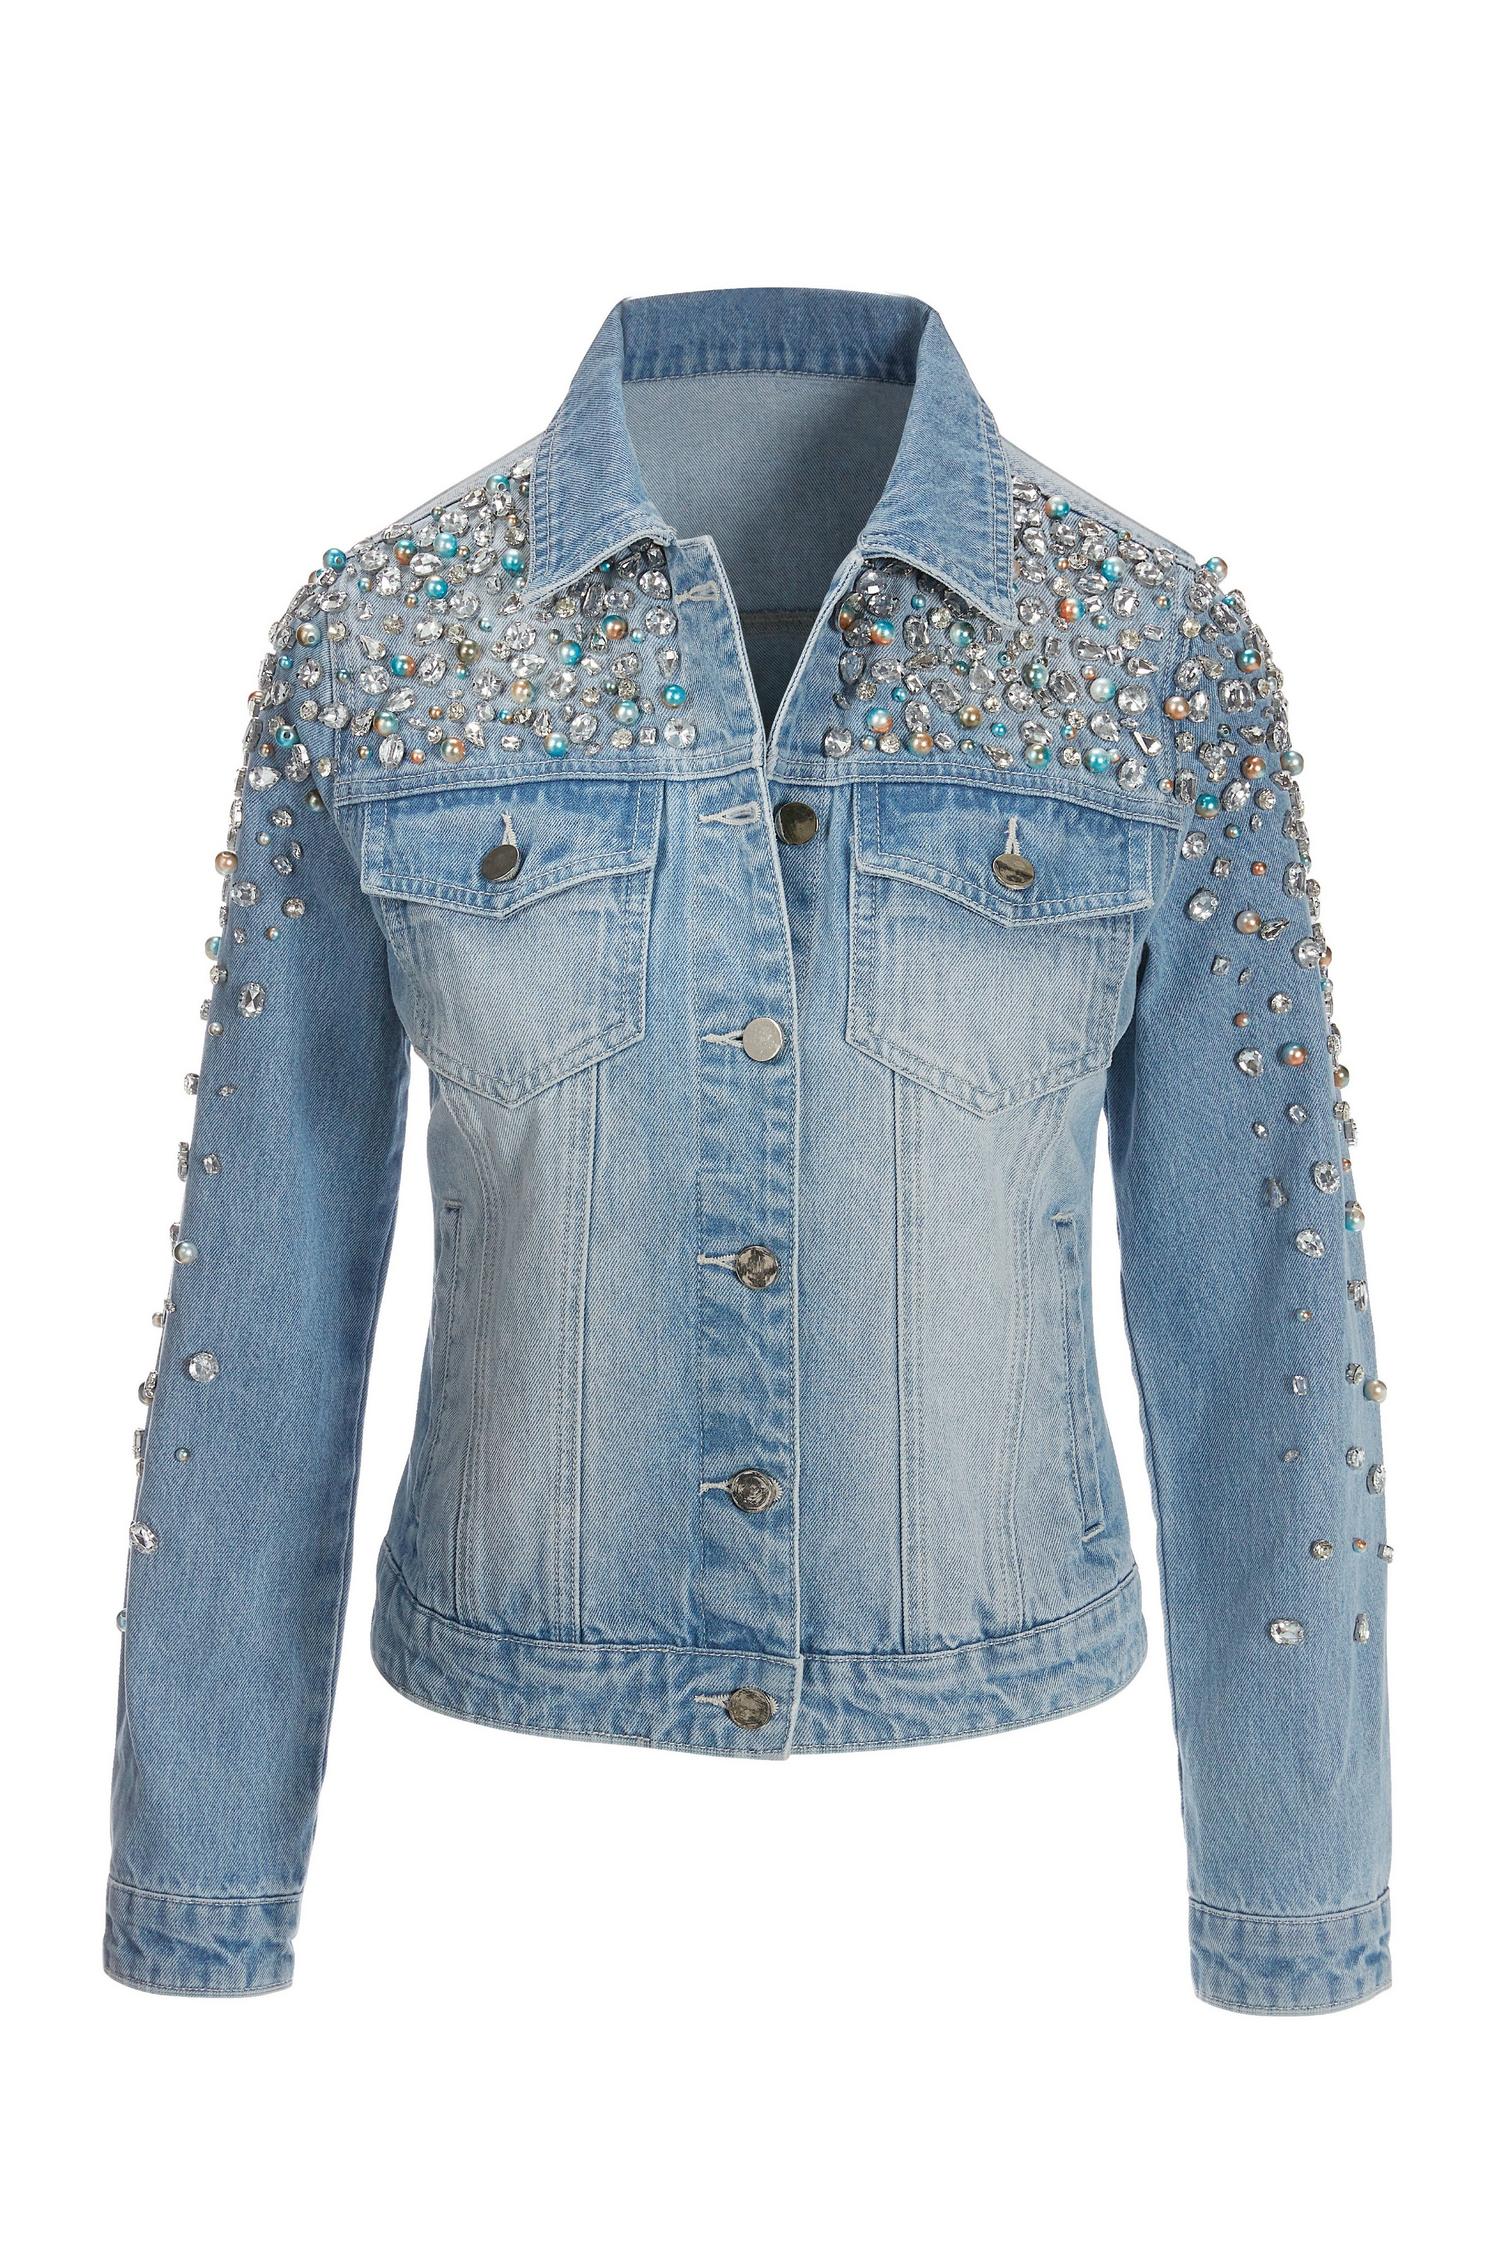 Denim Jean jacket with rhinestones - Jackets & Blazers